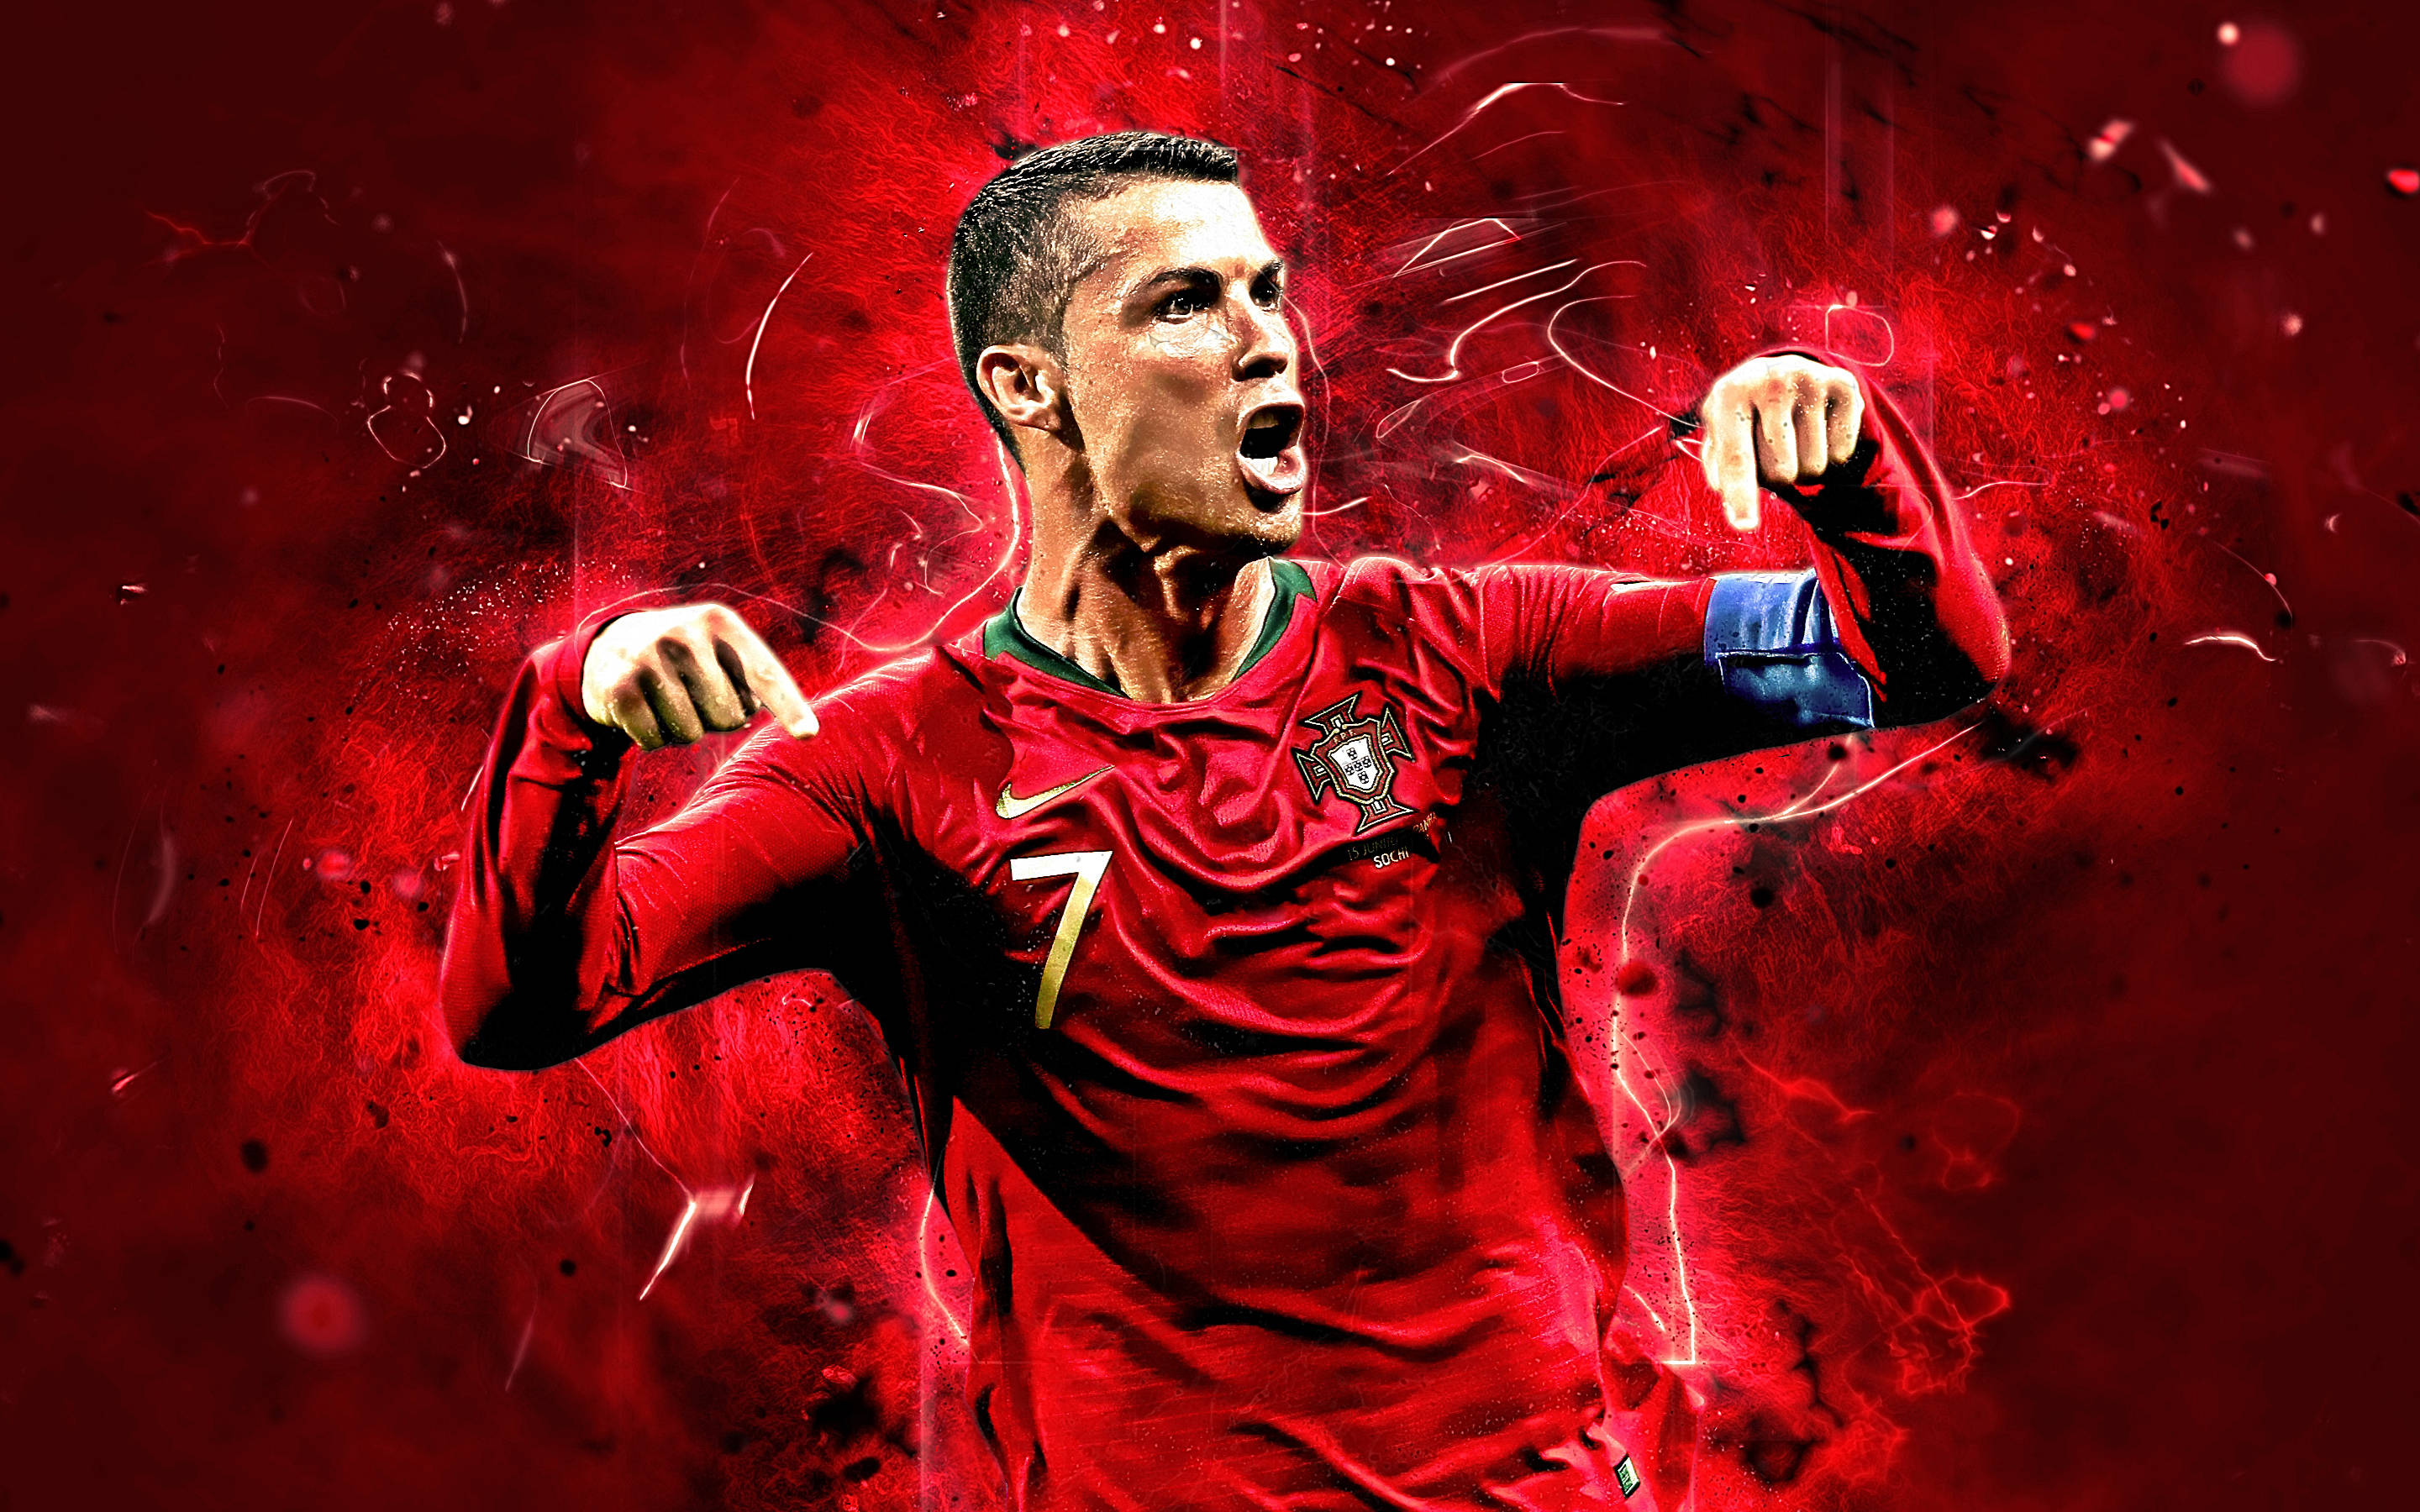 Red Poster Cristiano Ronaldo HD wallpaper: Bức hình nền HD của Cristiano Ronaldo với màu đỏ sẽ gợi lên sự kiêu hãnh, sức mạnh và tinh thần chiến đấu. Các CĐV của Ronaldo sẽ không thể bỏ qua những khoảnh khắc chân thật và hấp dẫn nhất của anh ta trong bộ sưu tập này.